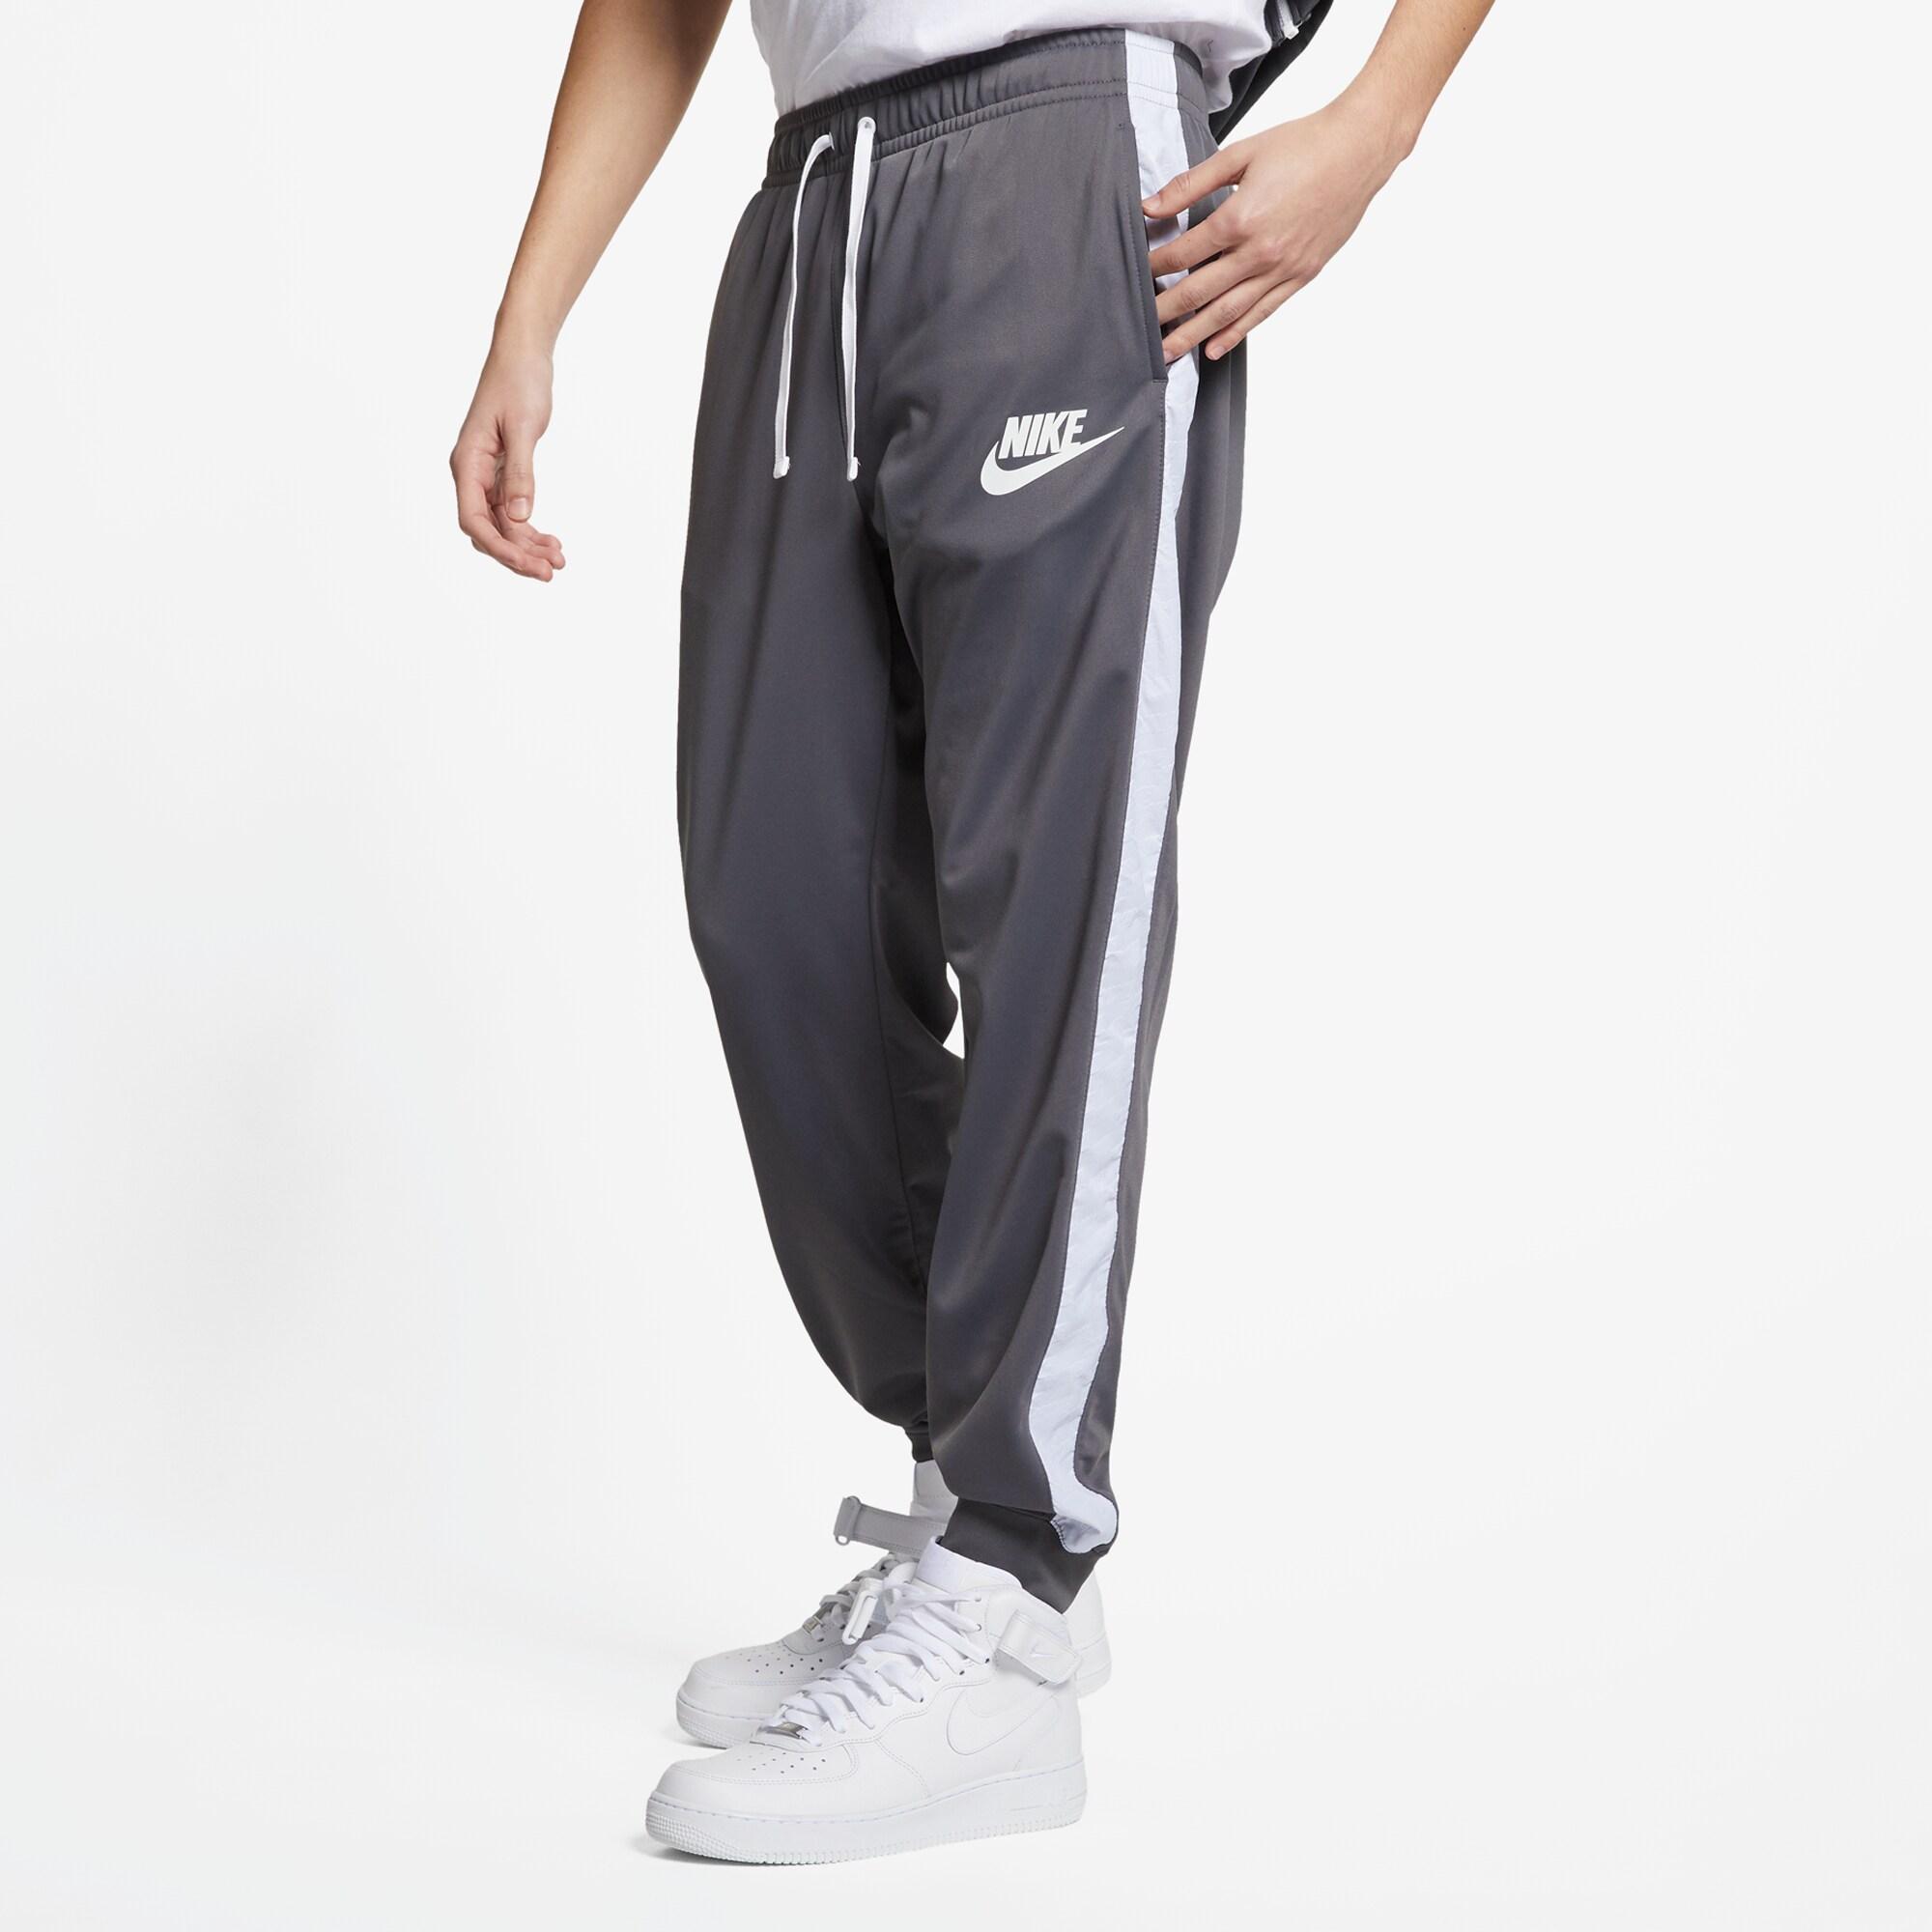 Nike Hybrid Track Pants in Gray for Men - Lyst